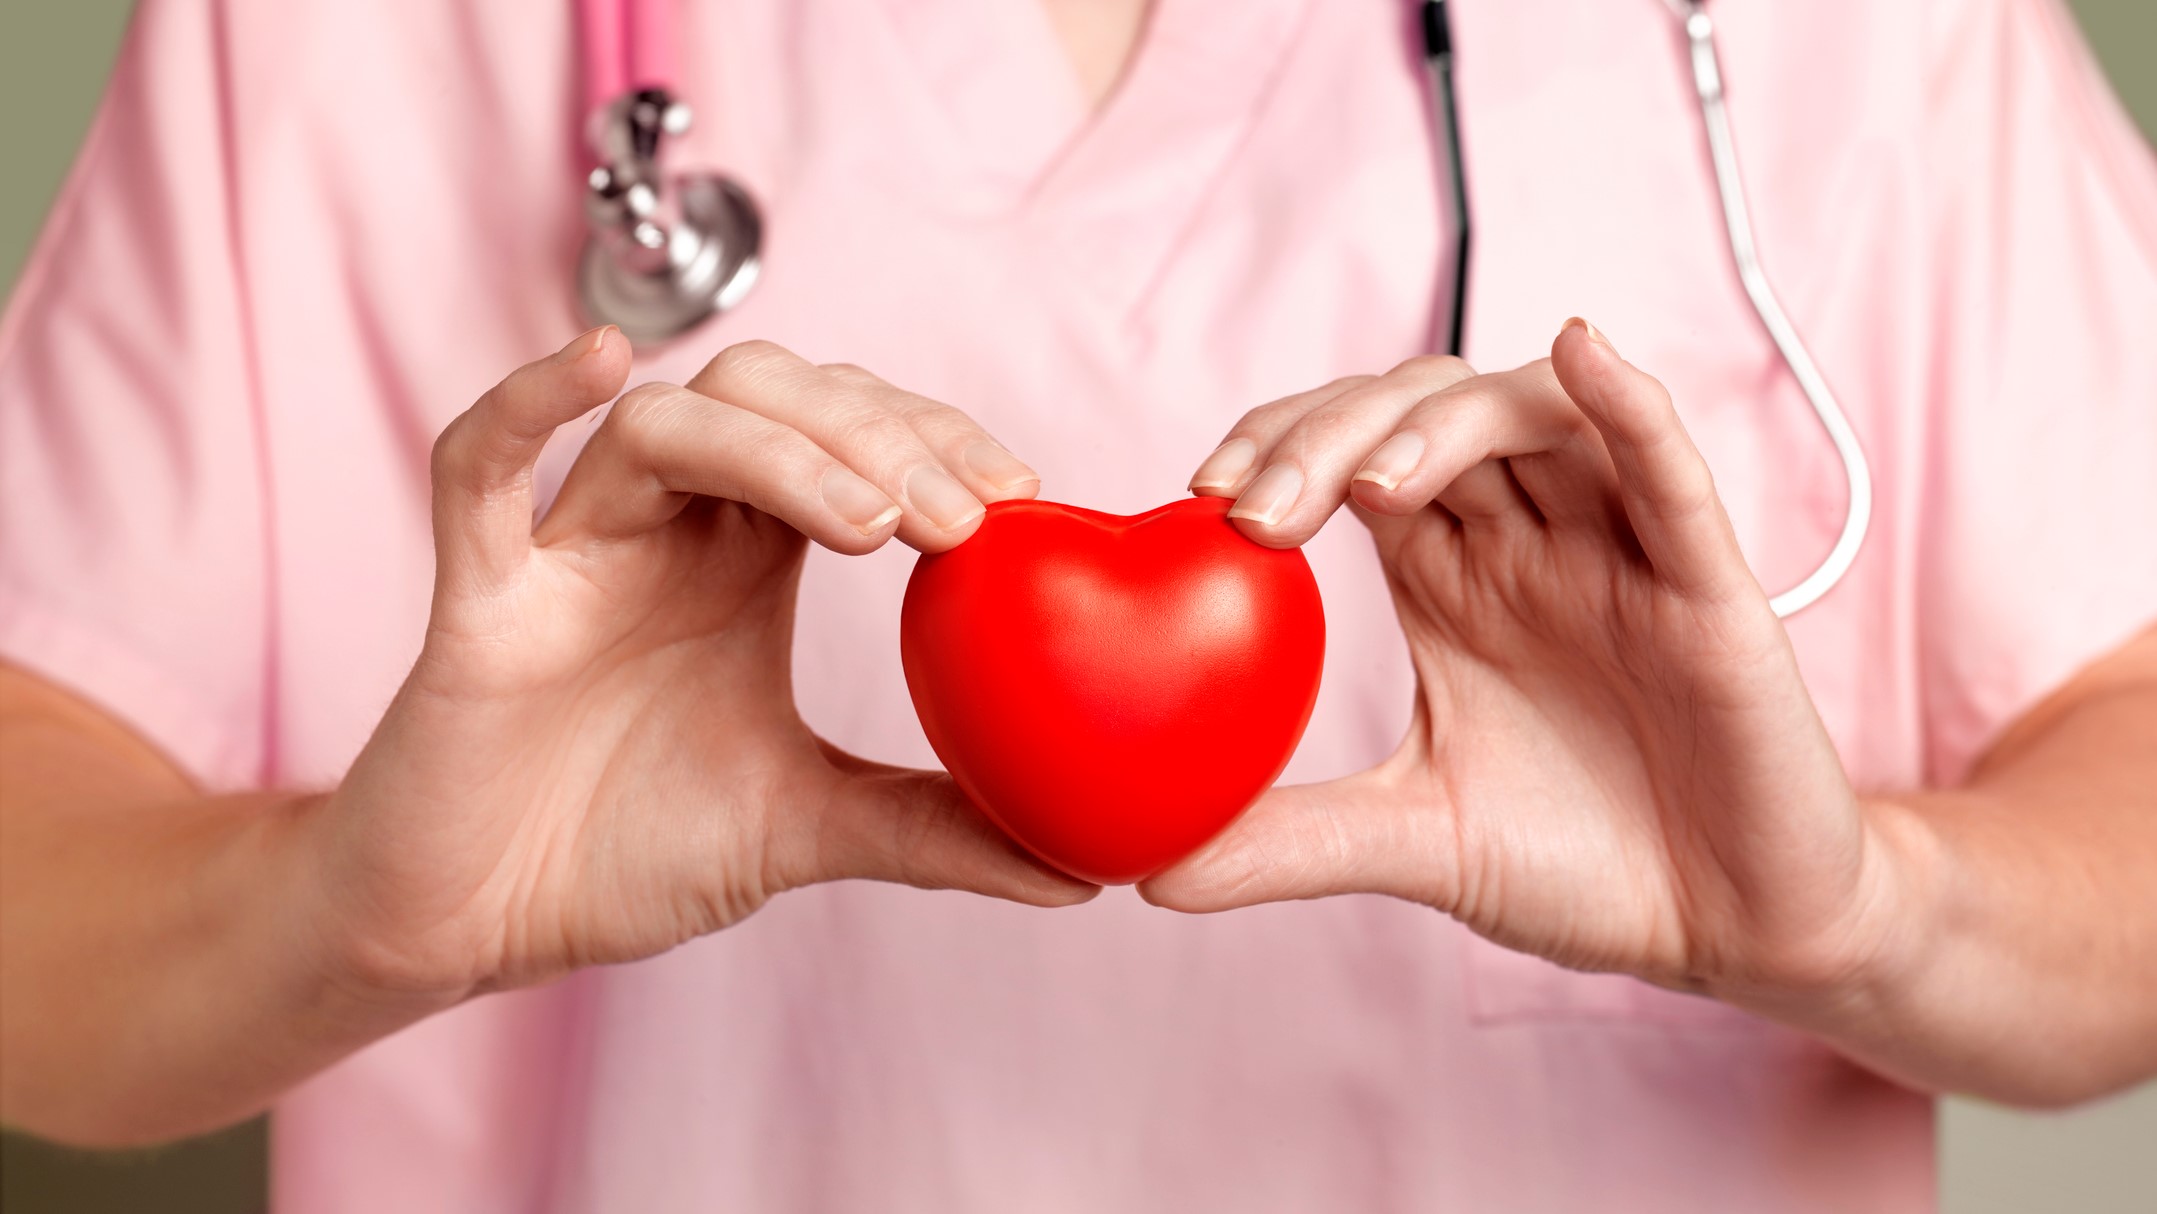 A leggyakoribb ritka betegség a született szívfejlődési rendellenesség